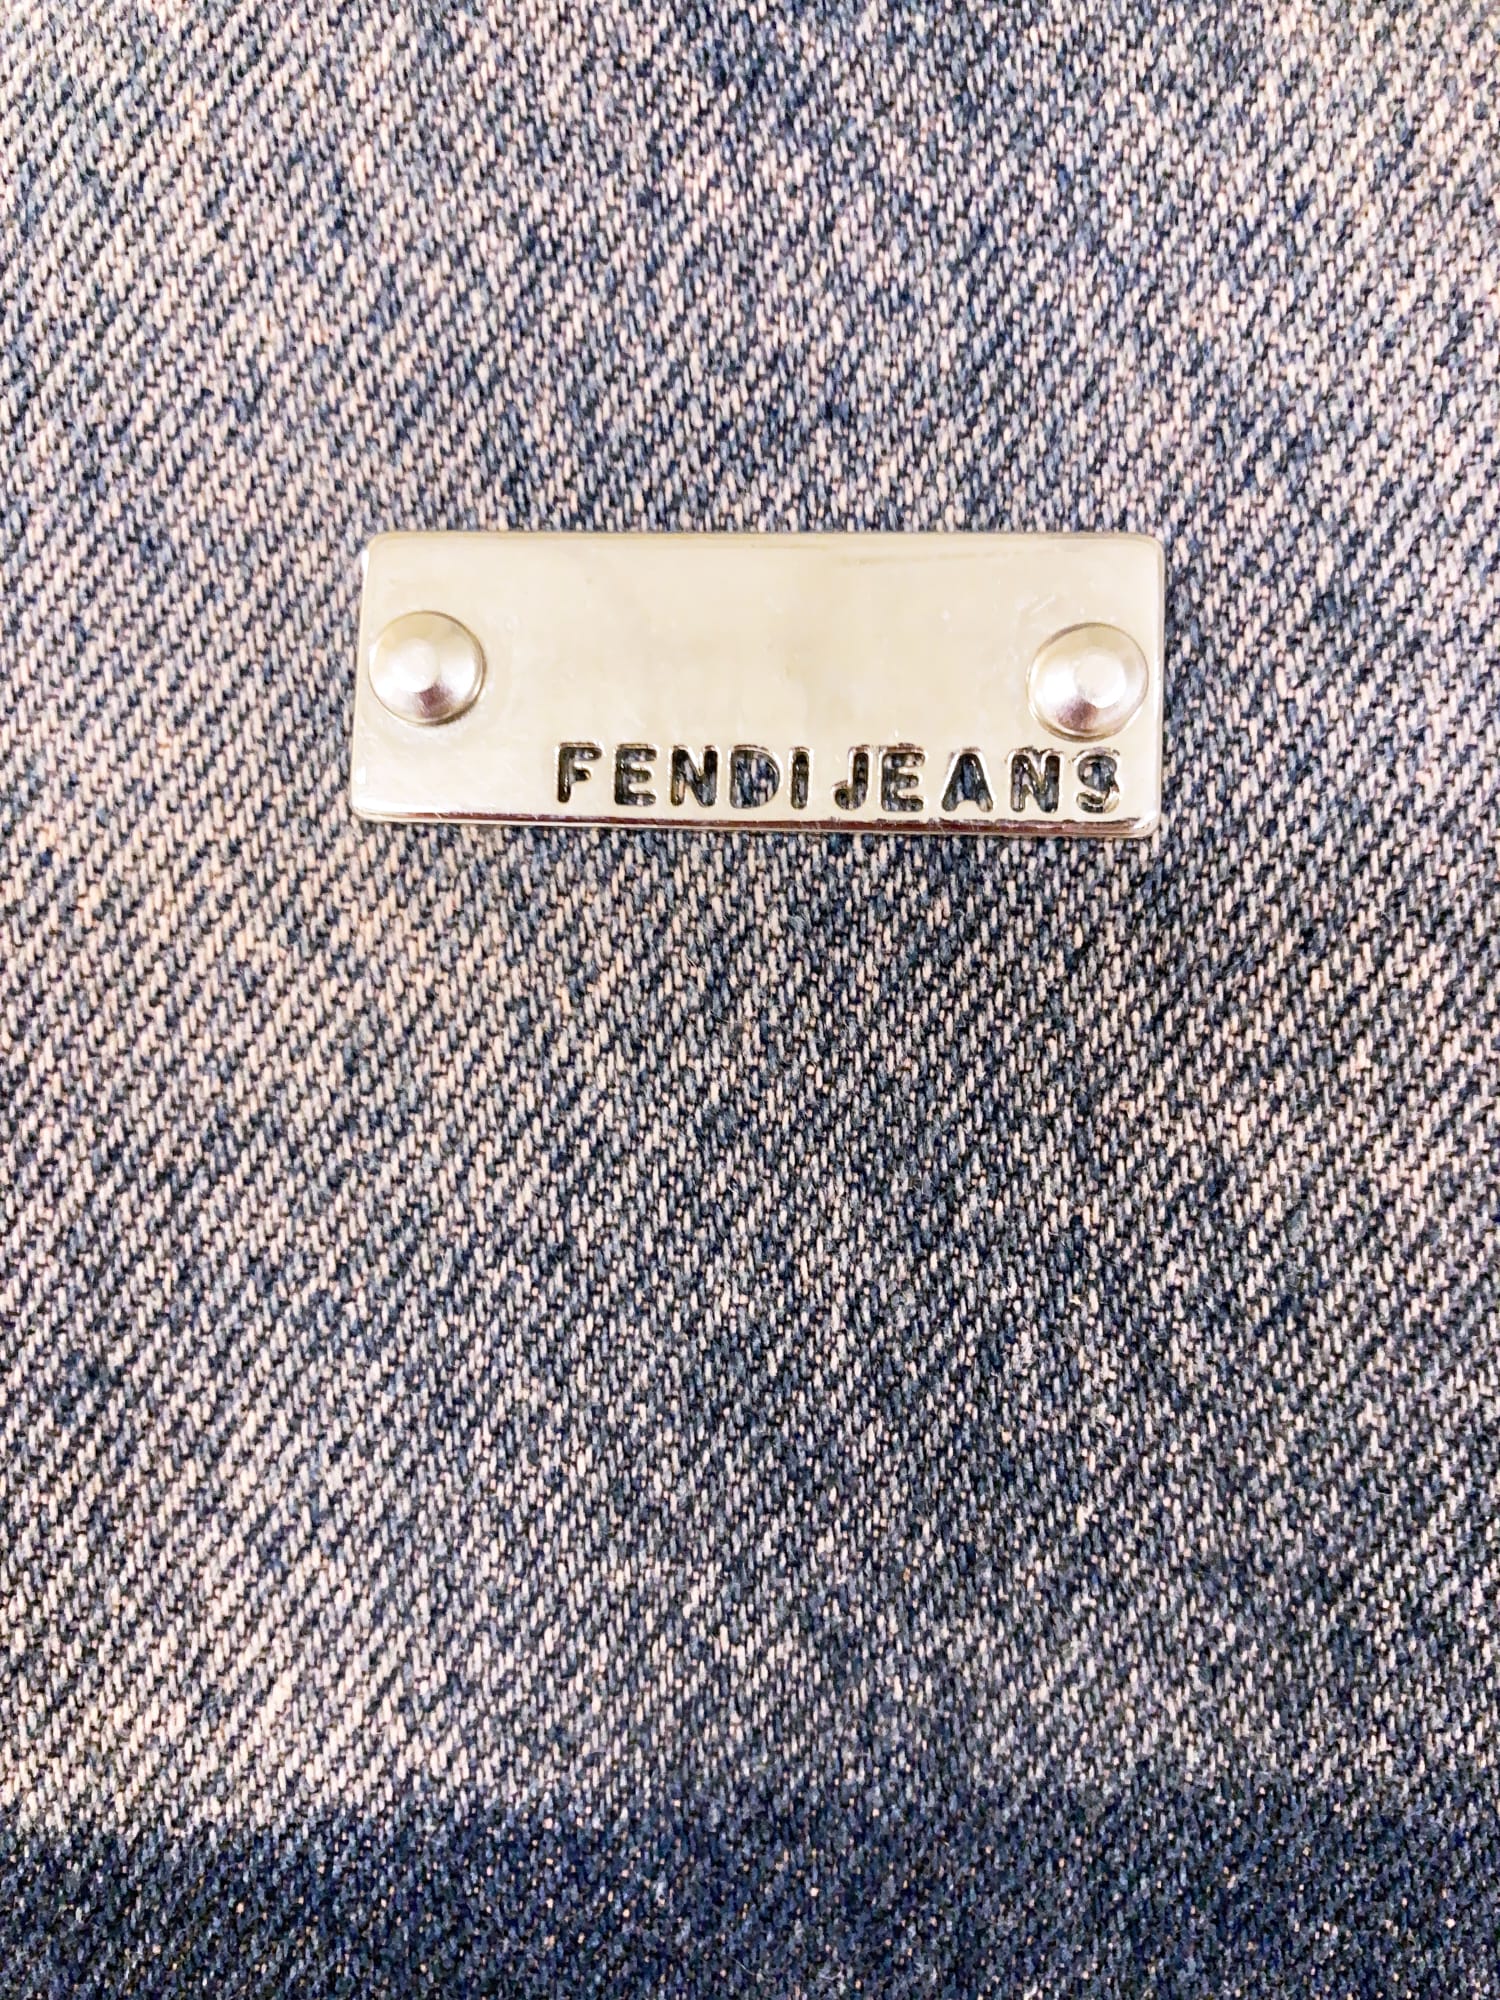 Fendi Jeans 1990s pink and blue cotton shibori tie dye denim jacket